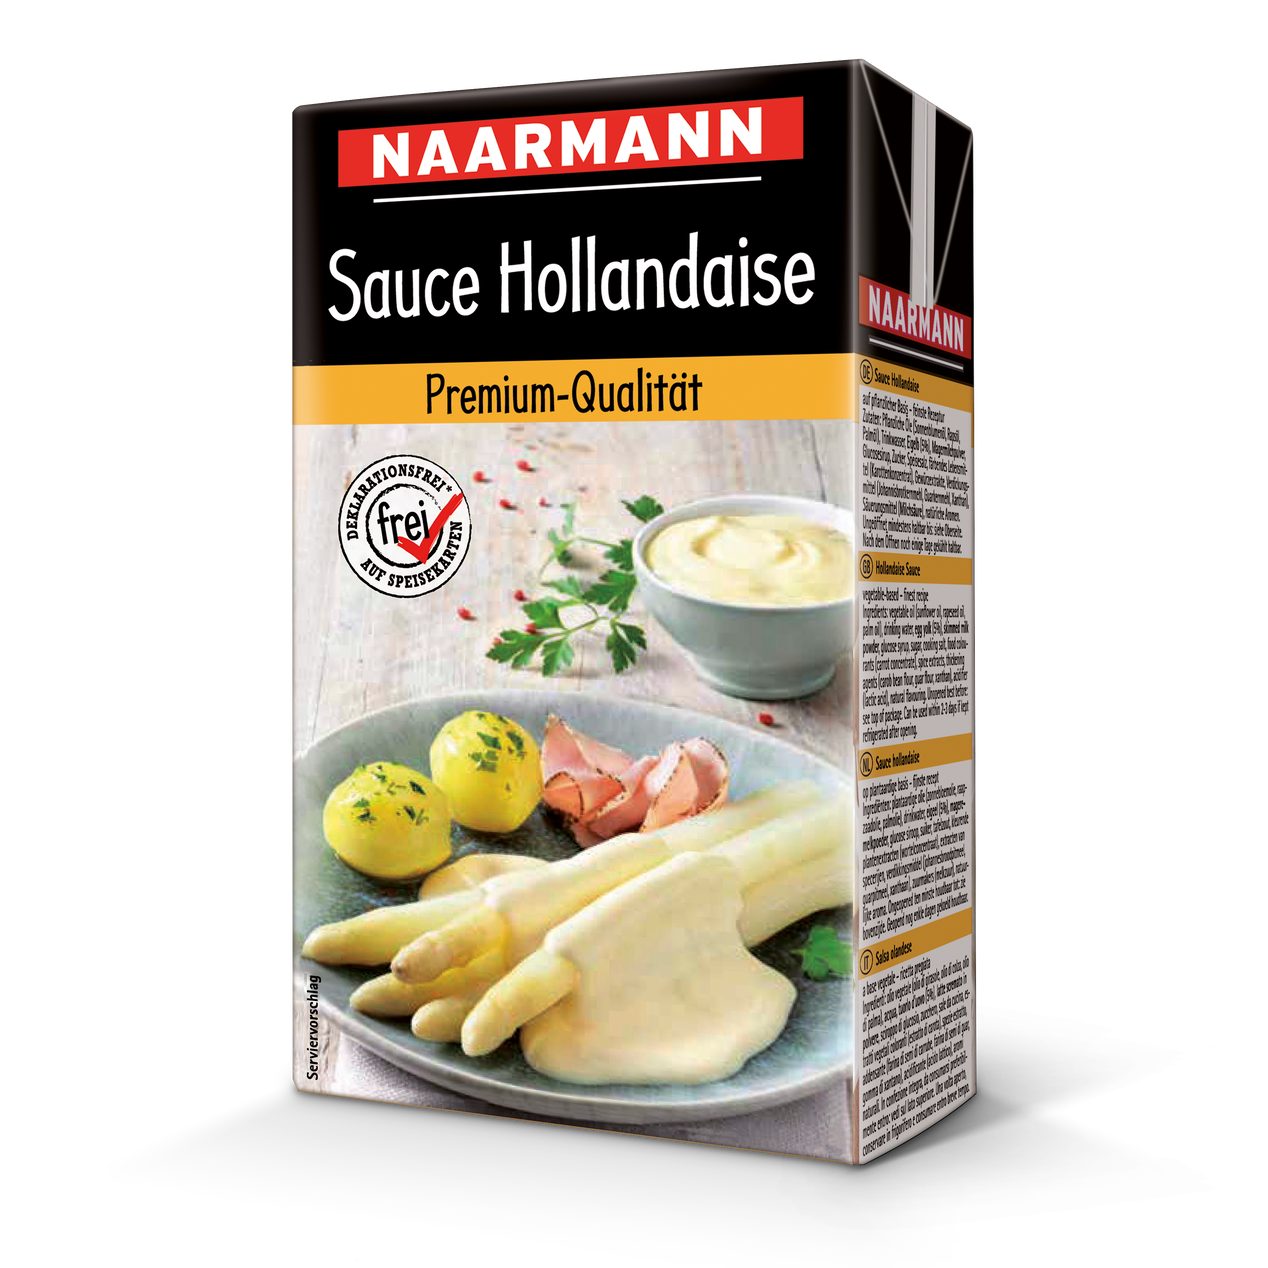 NAARMANN Sauce Hollandaise 